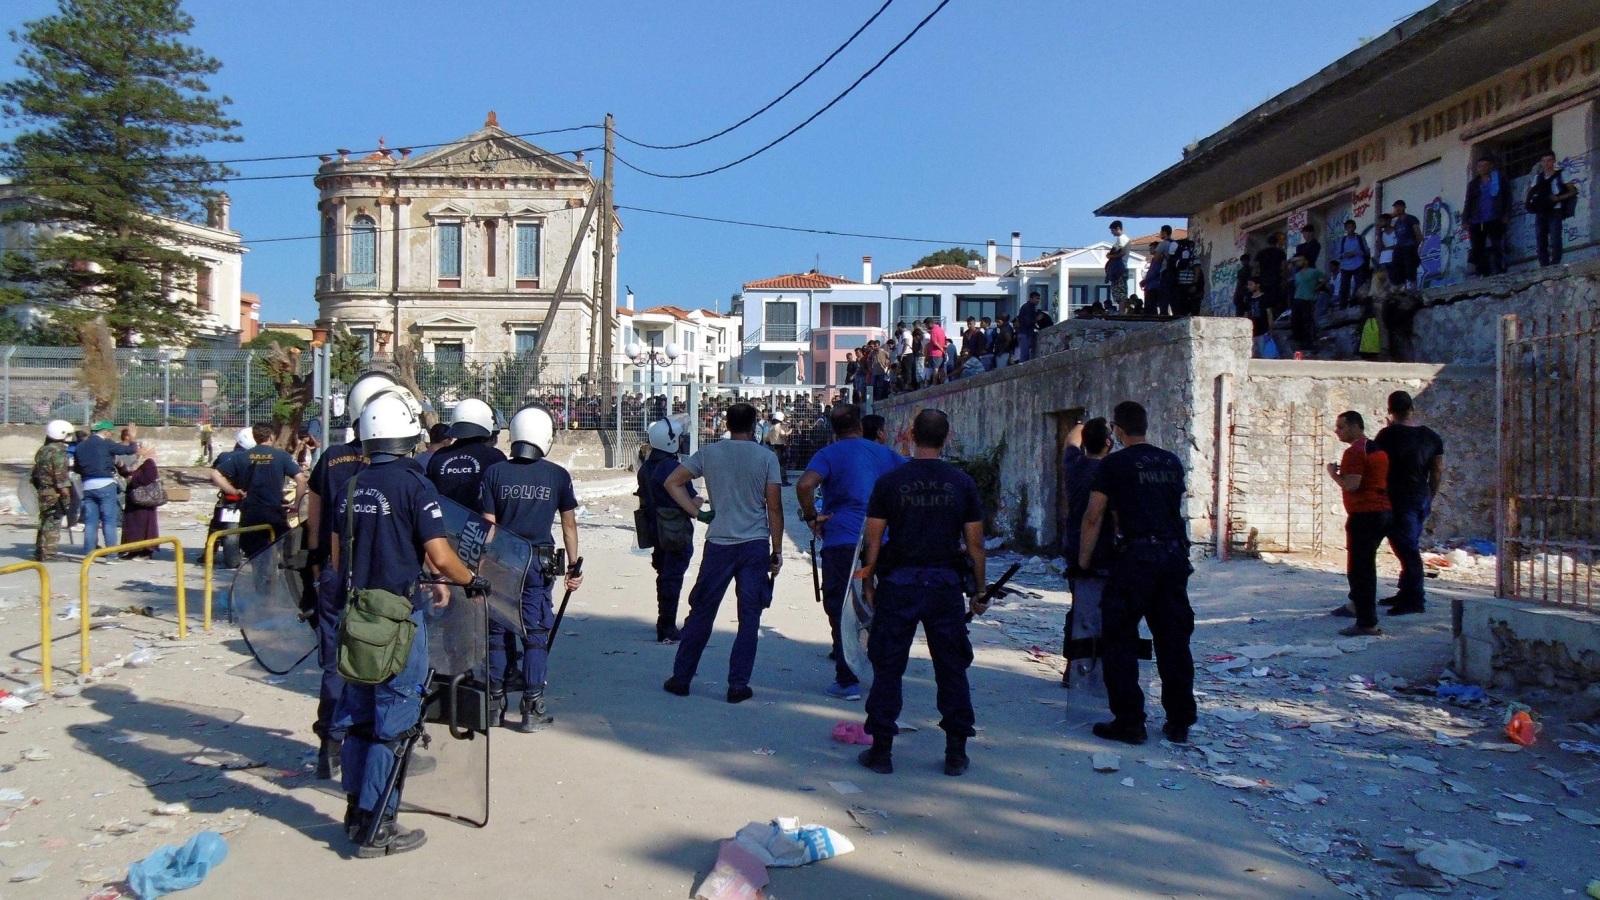 ‪الشرطة اليونانية في مواجهة لاجئين معظمهم أفغان في ميناء جزيرة ليسبوس ببحر إيجه‬ (الأوروبية)